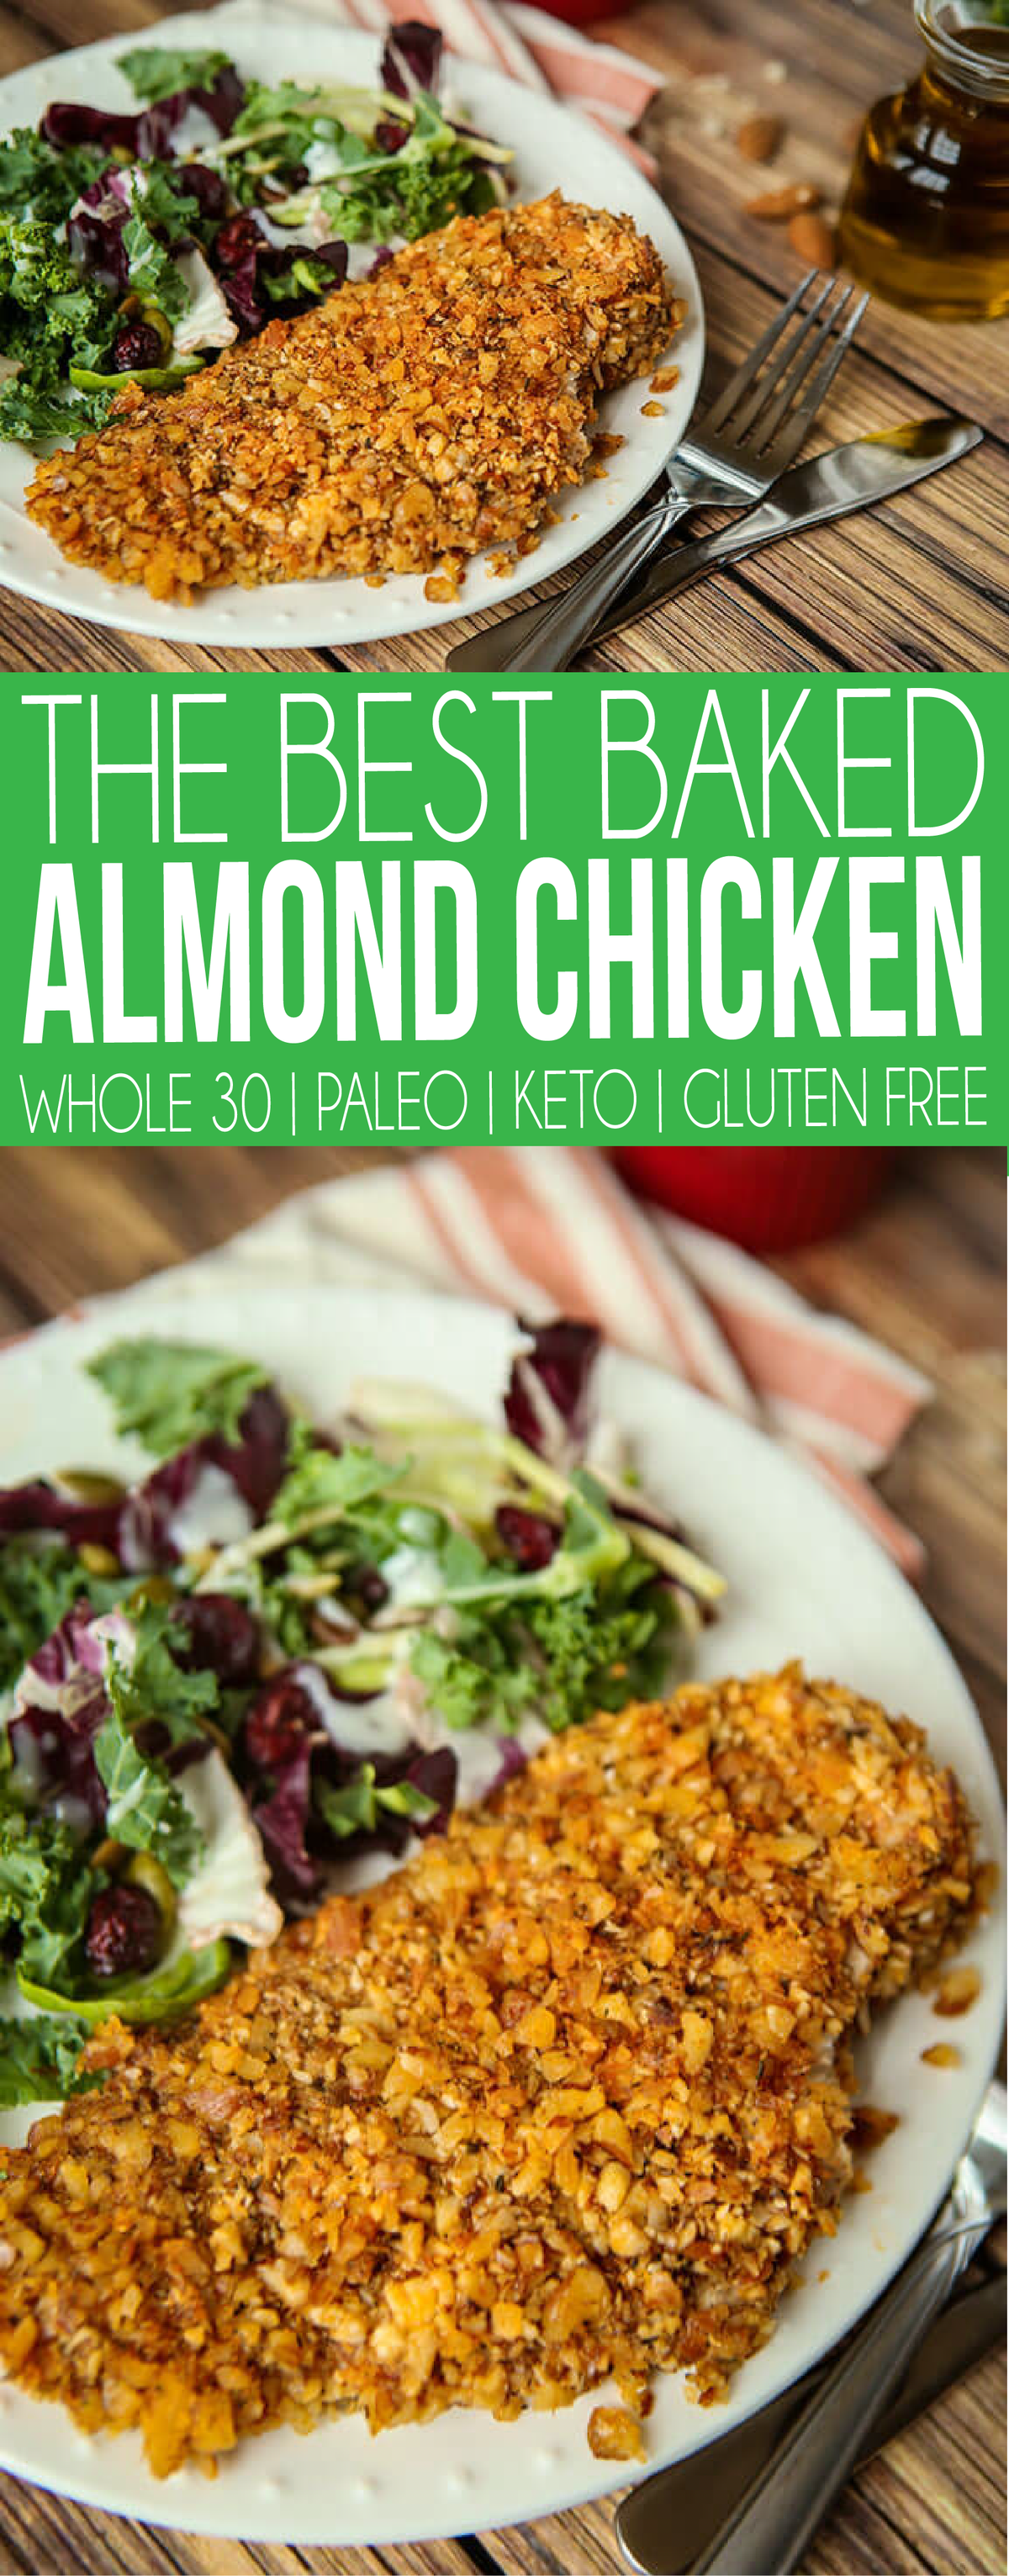 Een van de beste recepten voor paleo-amandelkip ooit! Deze Whole 30 amandelkip is gemakkelijk te maken, gebakken, gezond en perfect bij een salade! Of als je wilt - snijd het in plakjes en maak in plaats daarvan amandelkip-tenders. Werkt zelfs voor een Keto-dieet!